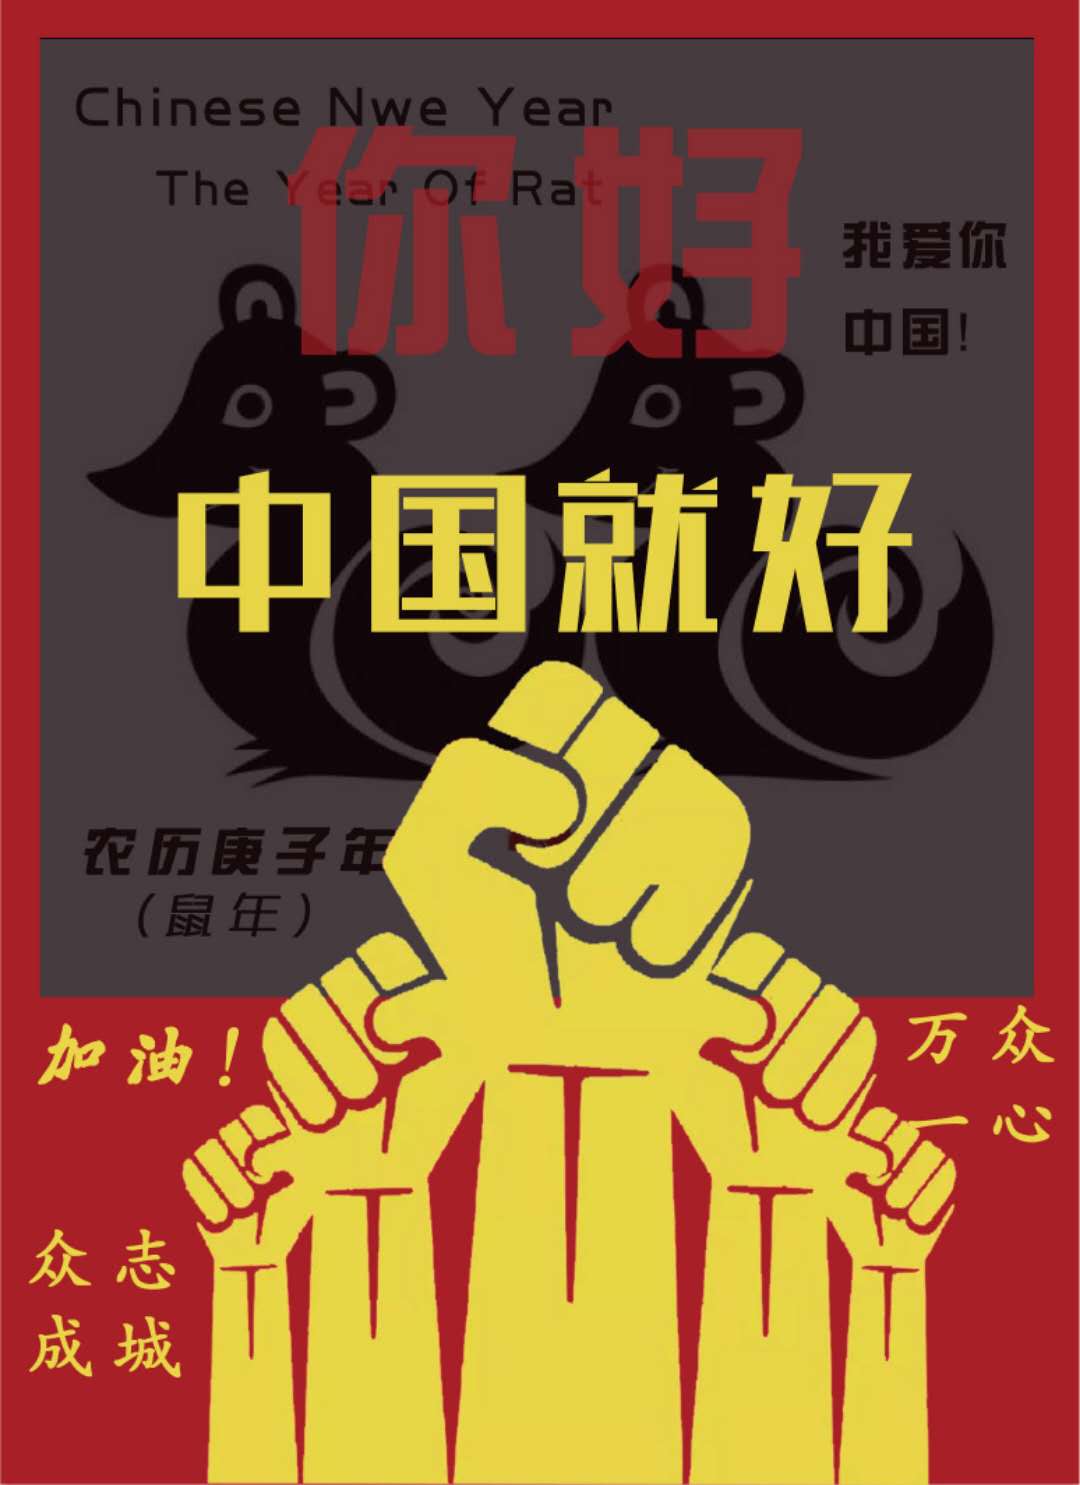 李晓雷老师线上课中学生设计战疫主题海报.jpg